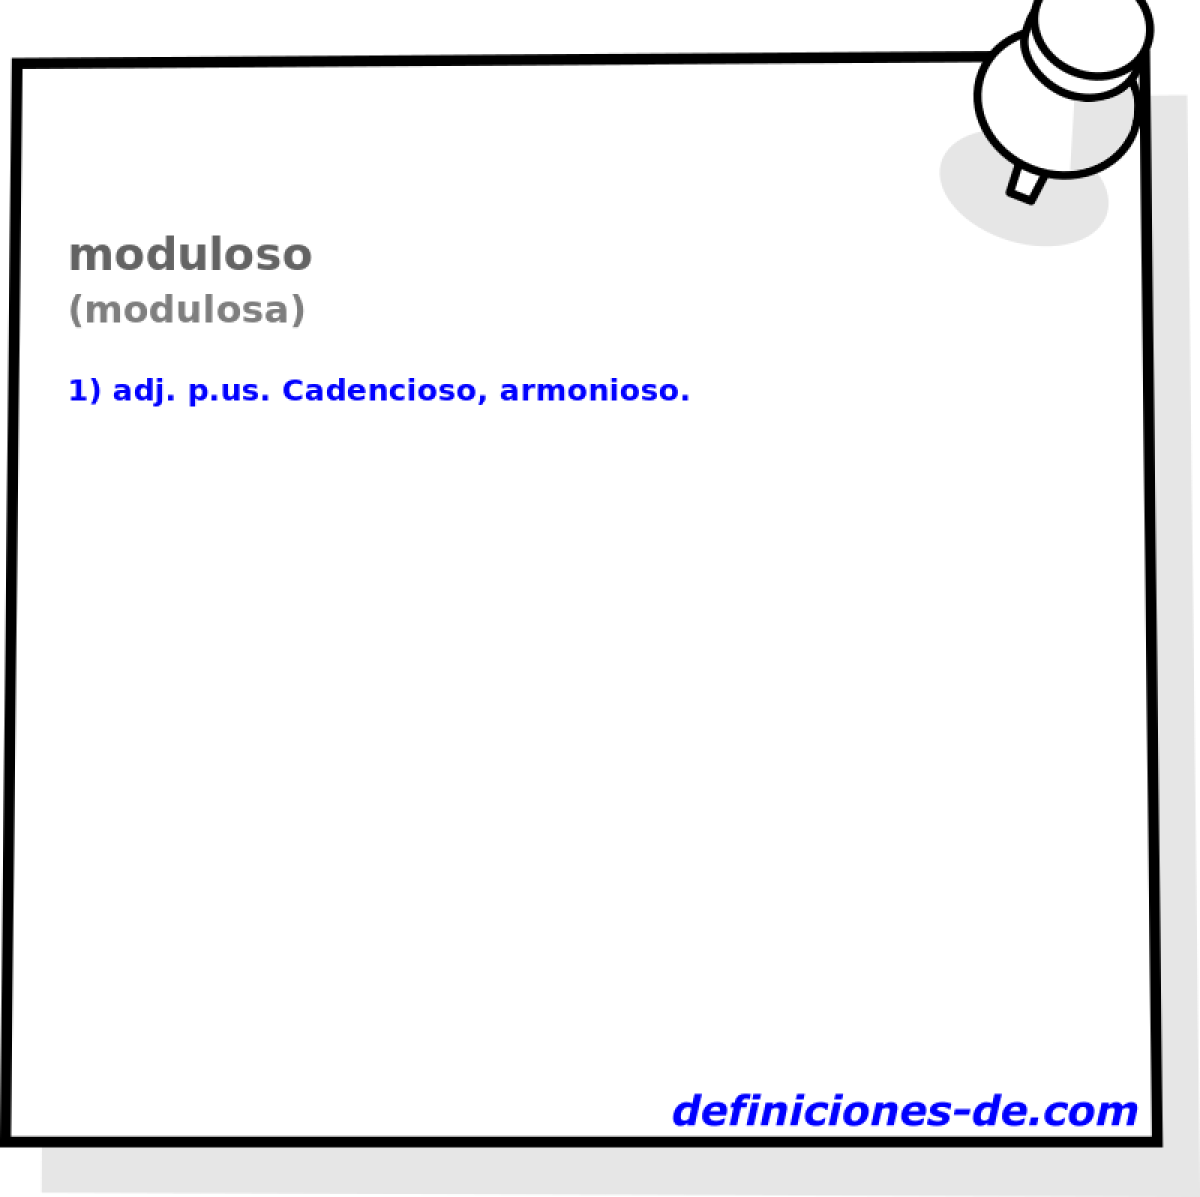 moduloso (modulosa)